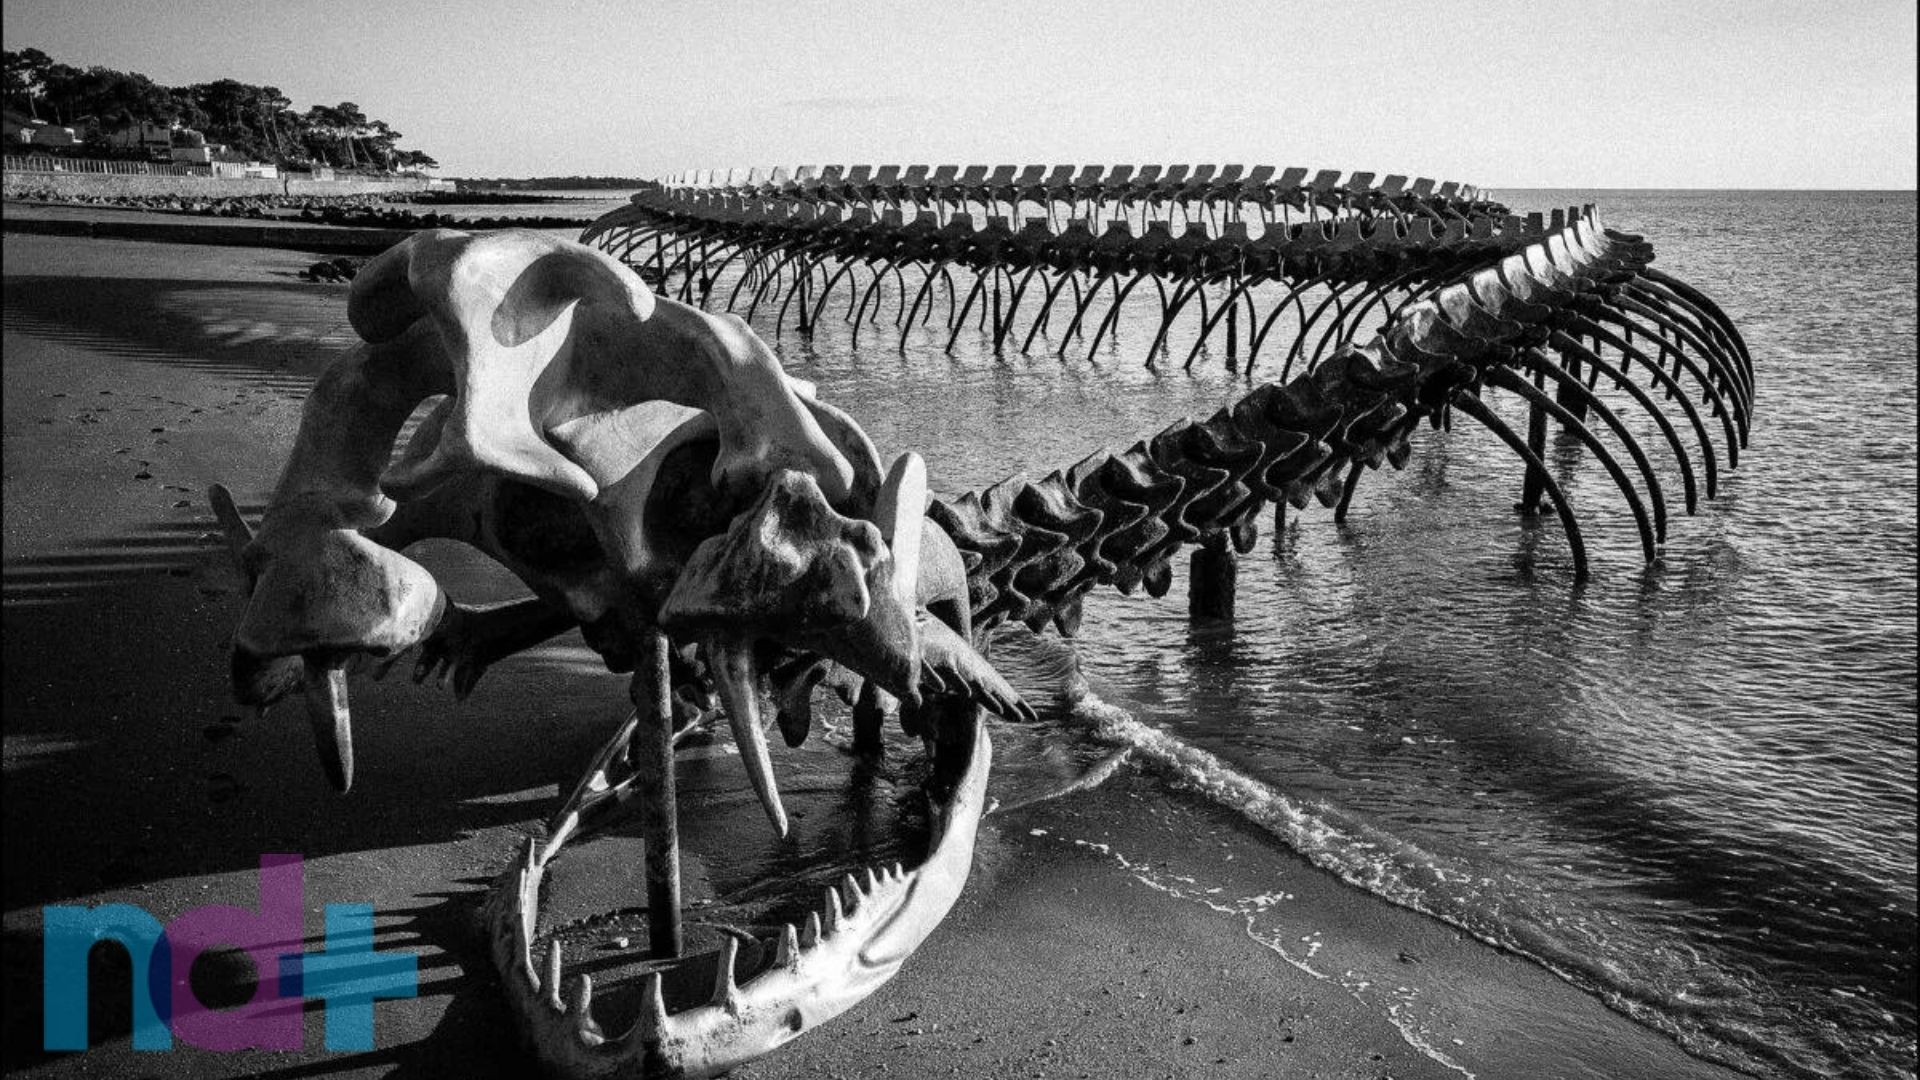 A verdade por trás do vídeo que mostra um 'esqueleto de cobra gigante' –  Metro World News Brasil